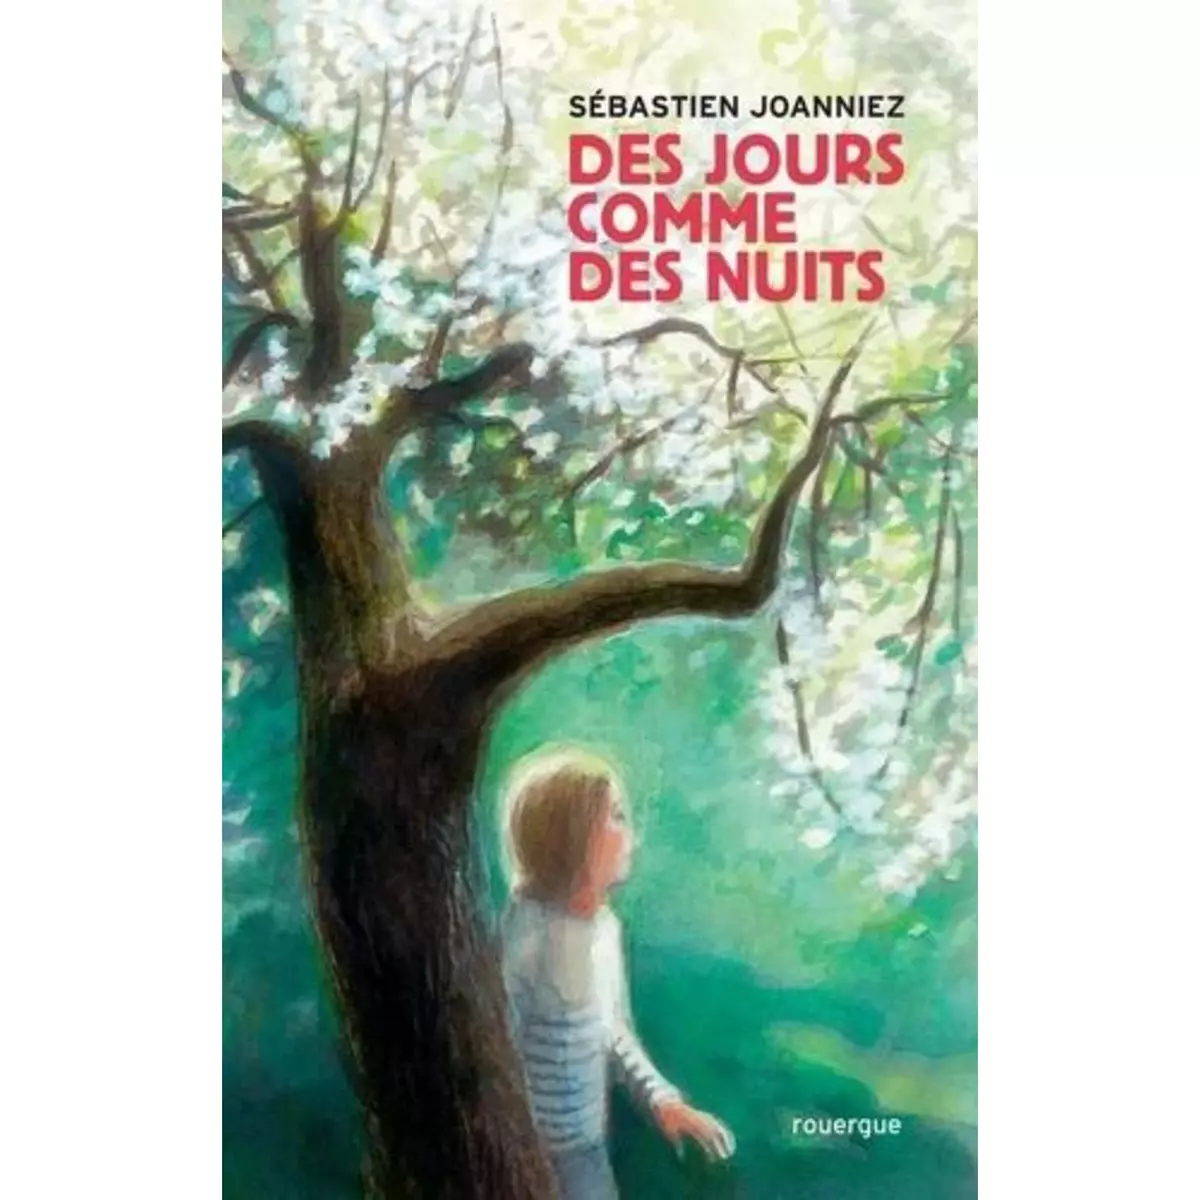  DES JOURS COMME DES NUITS, Joanniez Sébastien